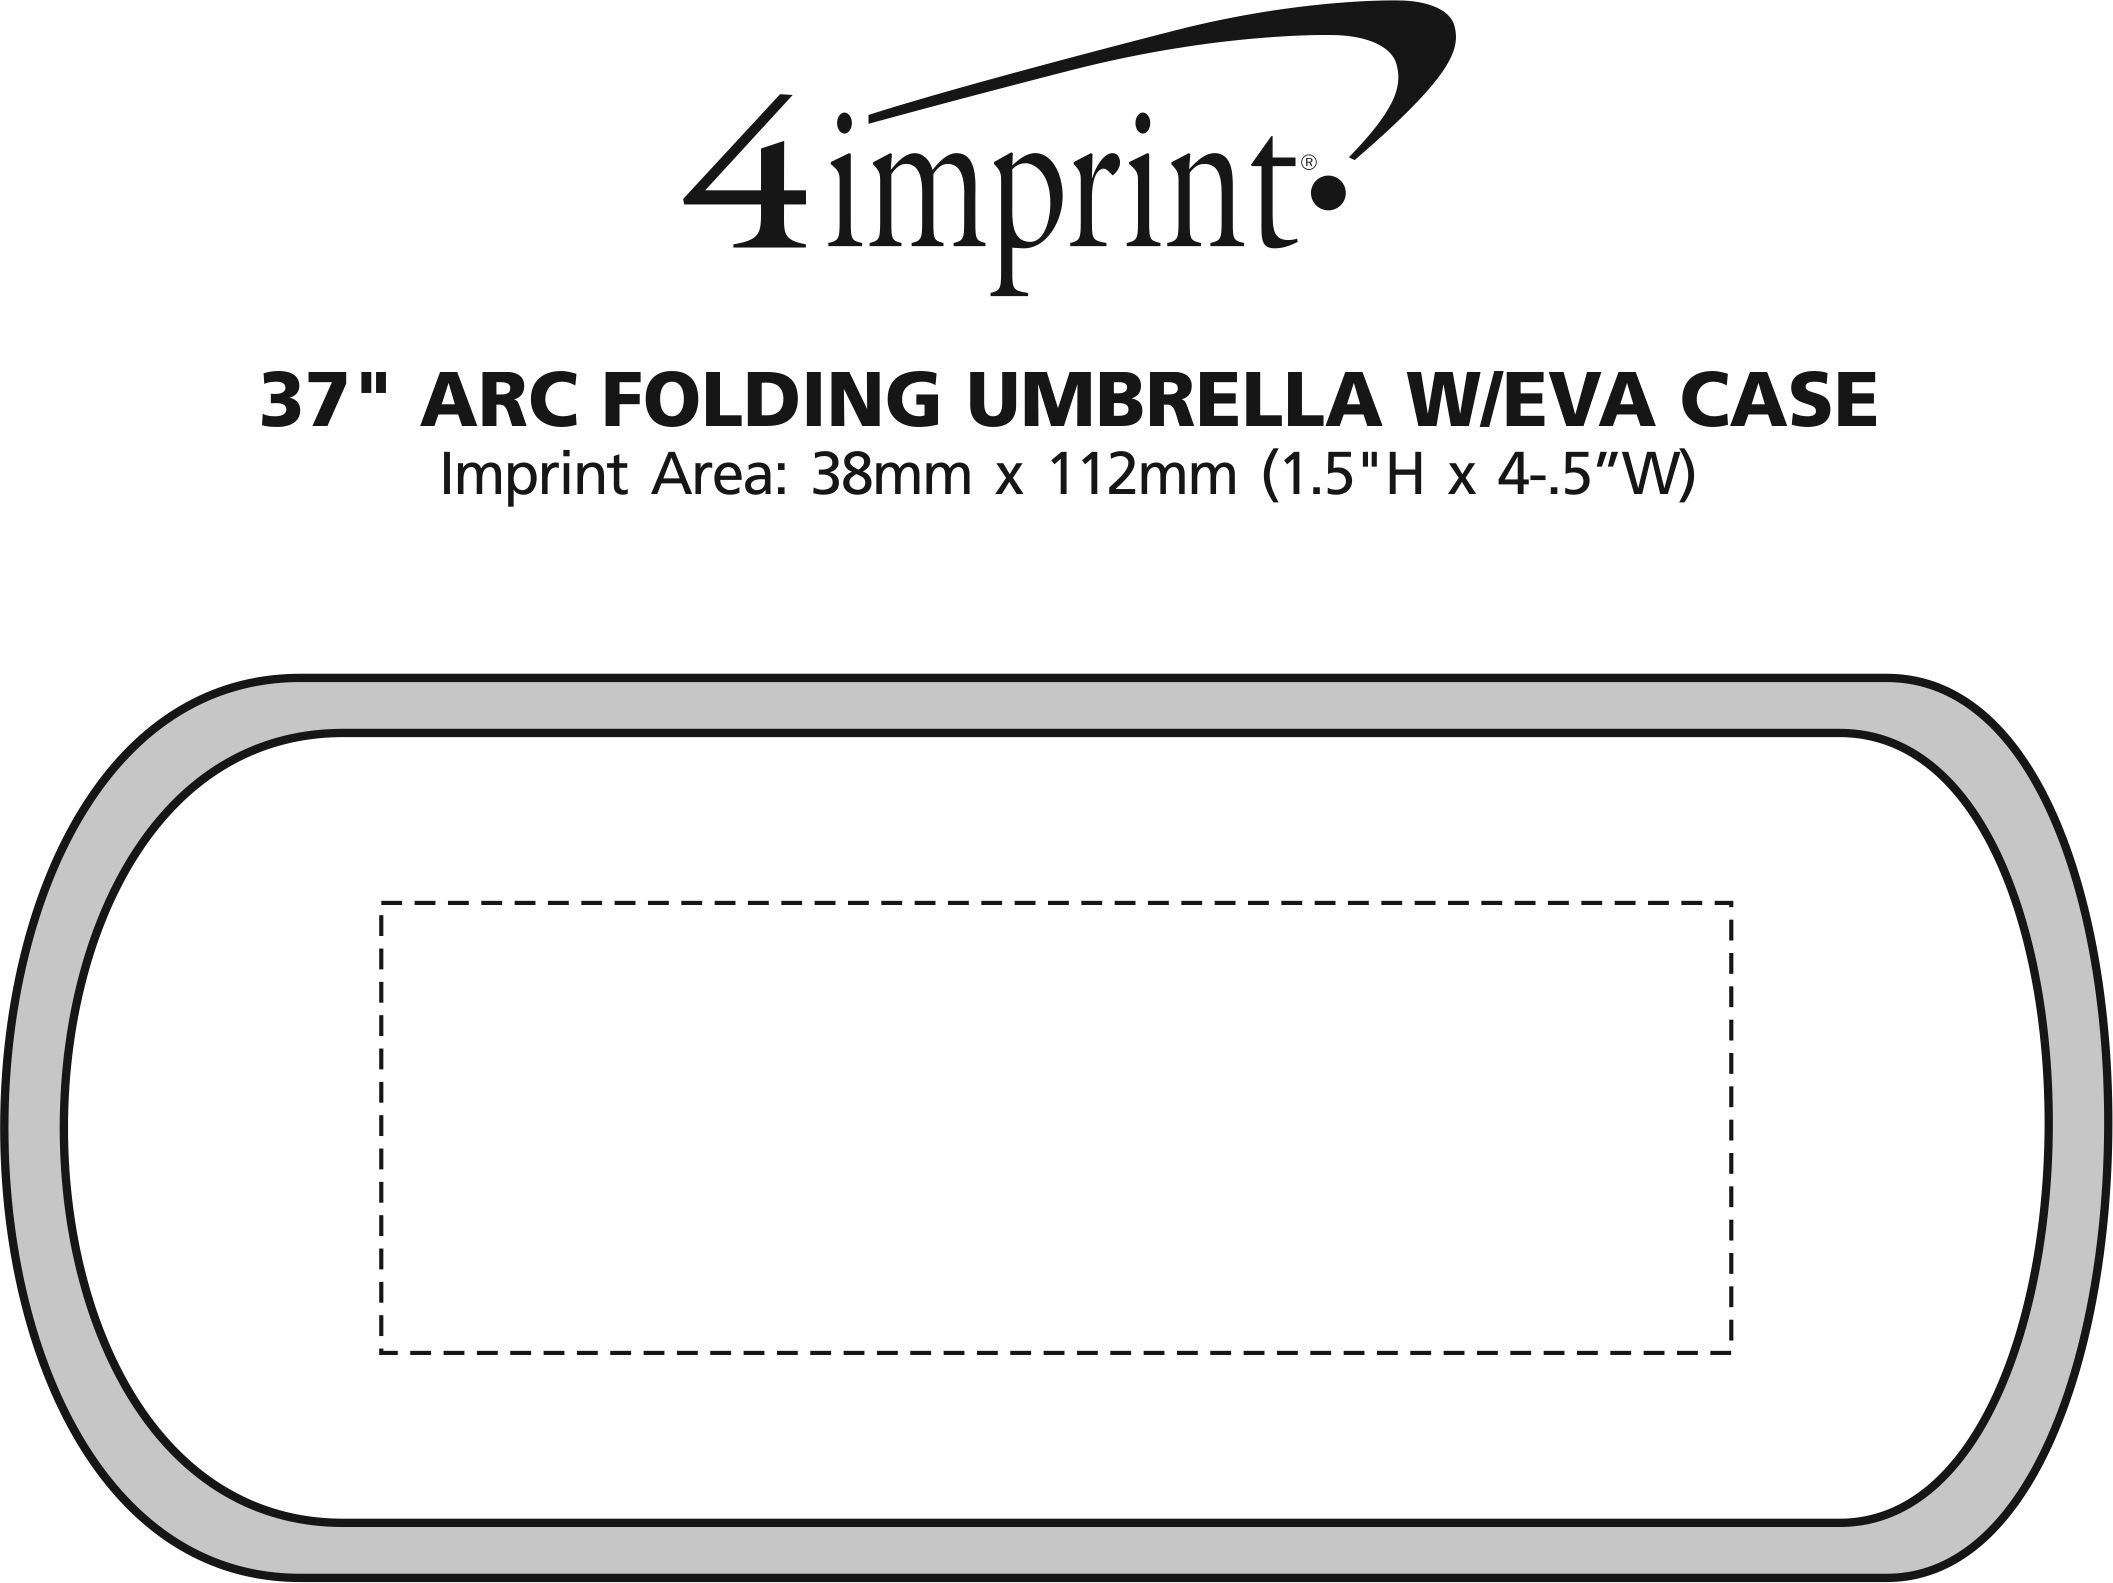 4imprint Ca Mini Folding Umbrella With Eva Case 37 Arc